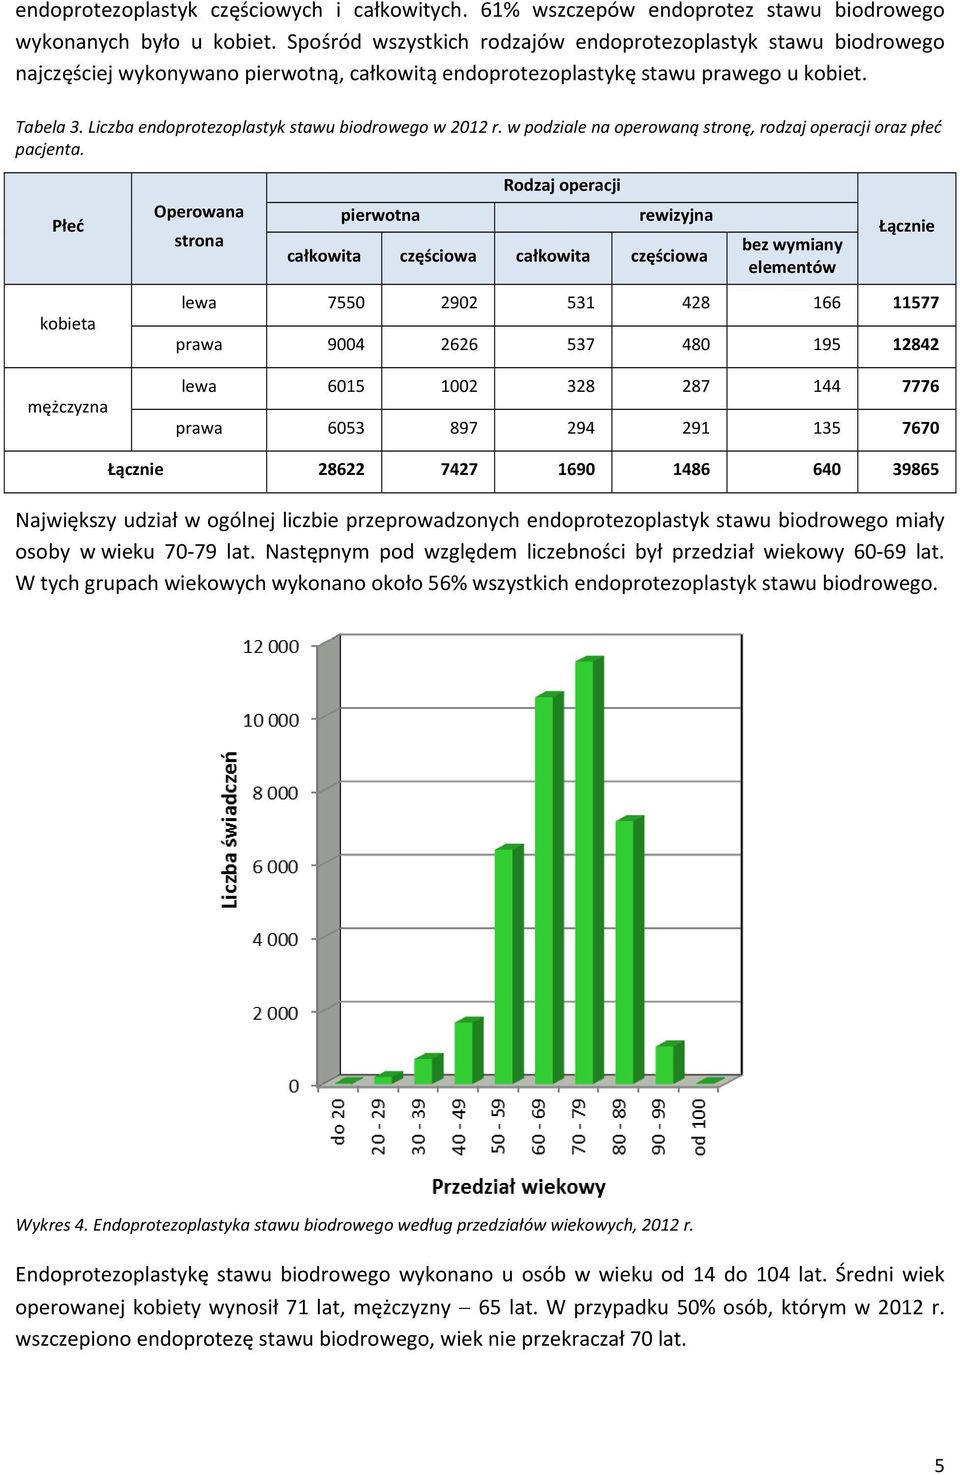 Liczba endoprotezoplastyk stawu biodrowego w 2012 r. w podziale na operowaną stronę, rodzaj operacji oraz płeć pacjenta.